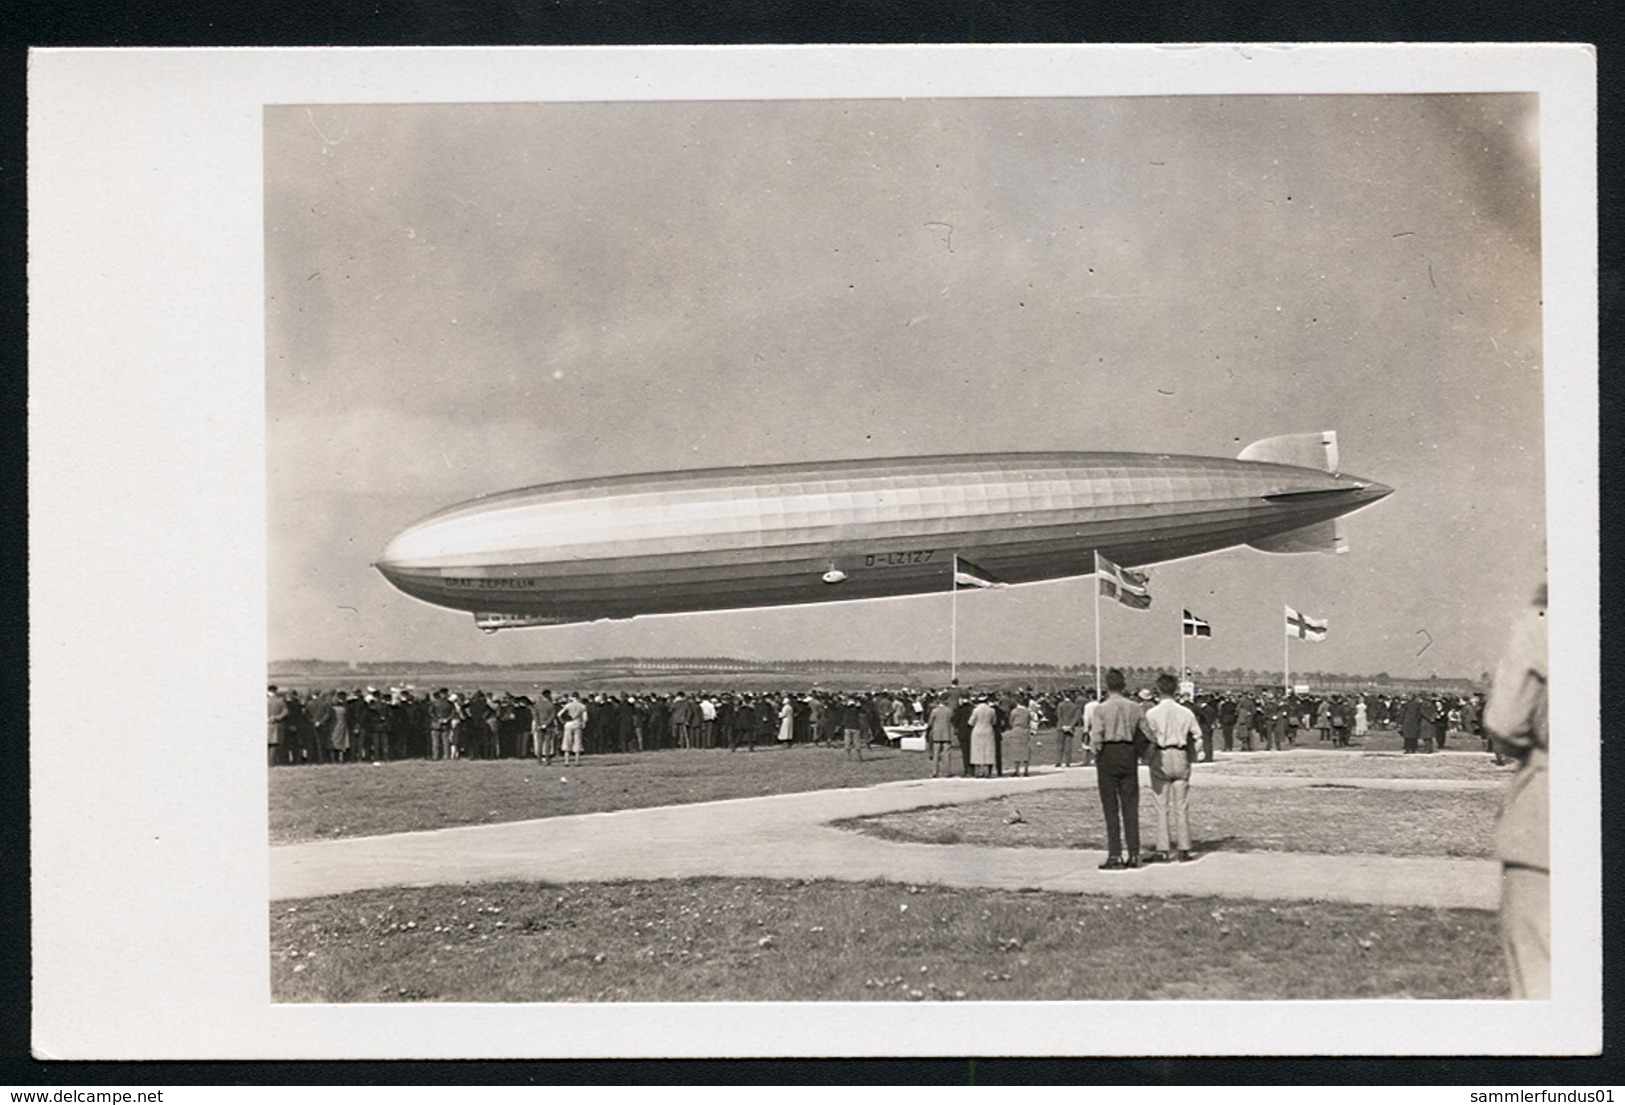 Foto AK/CP  Graf Zeppelin Luftschiff  LZ 127  Landung   Ungel/uncirc.1930er  Erhaltung/Cond. 2  Nr. 00625 - Dirigeables